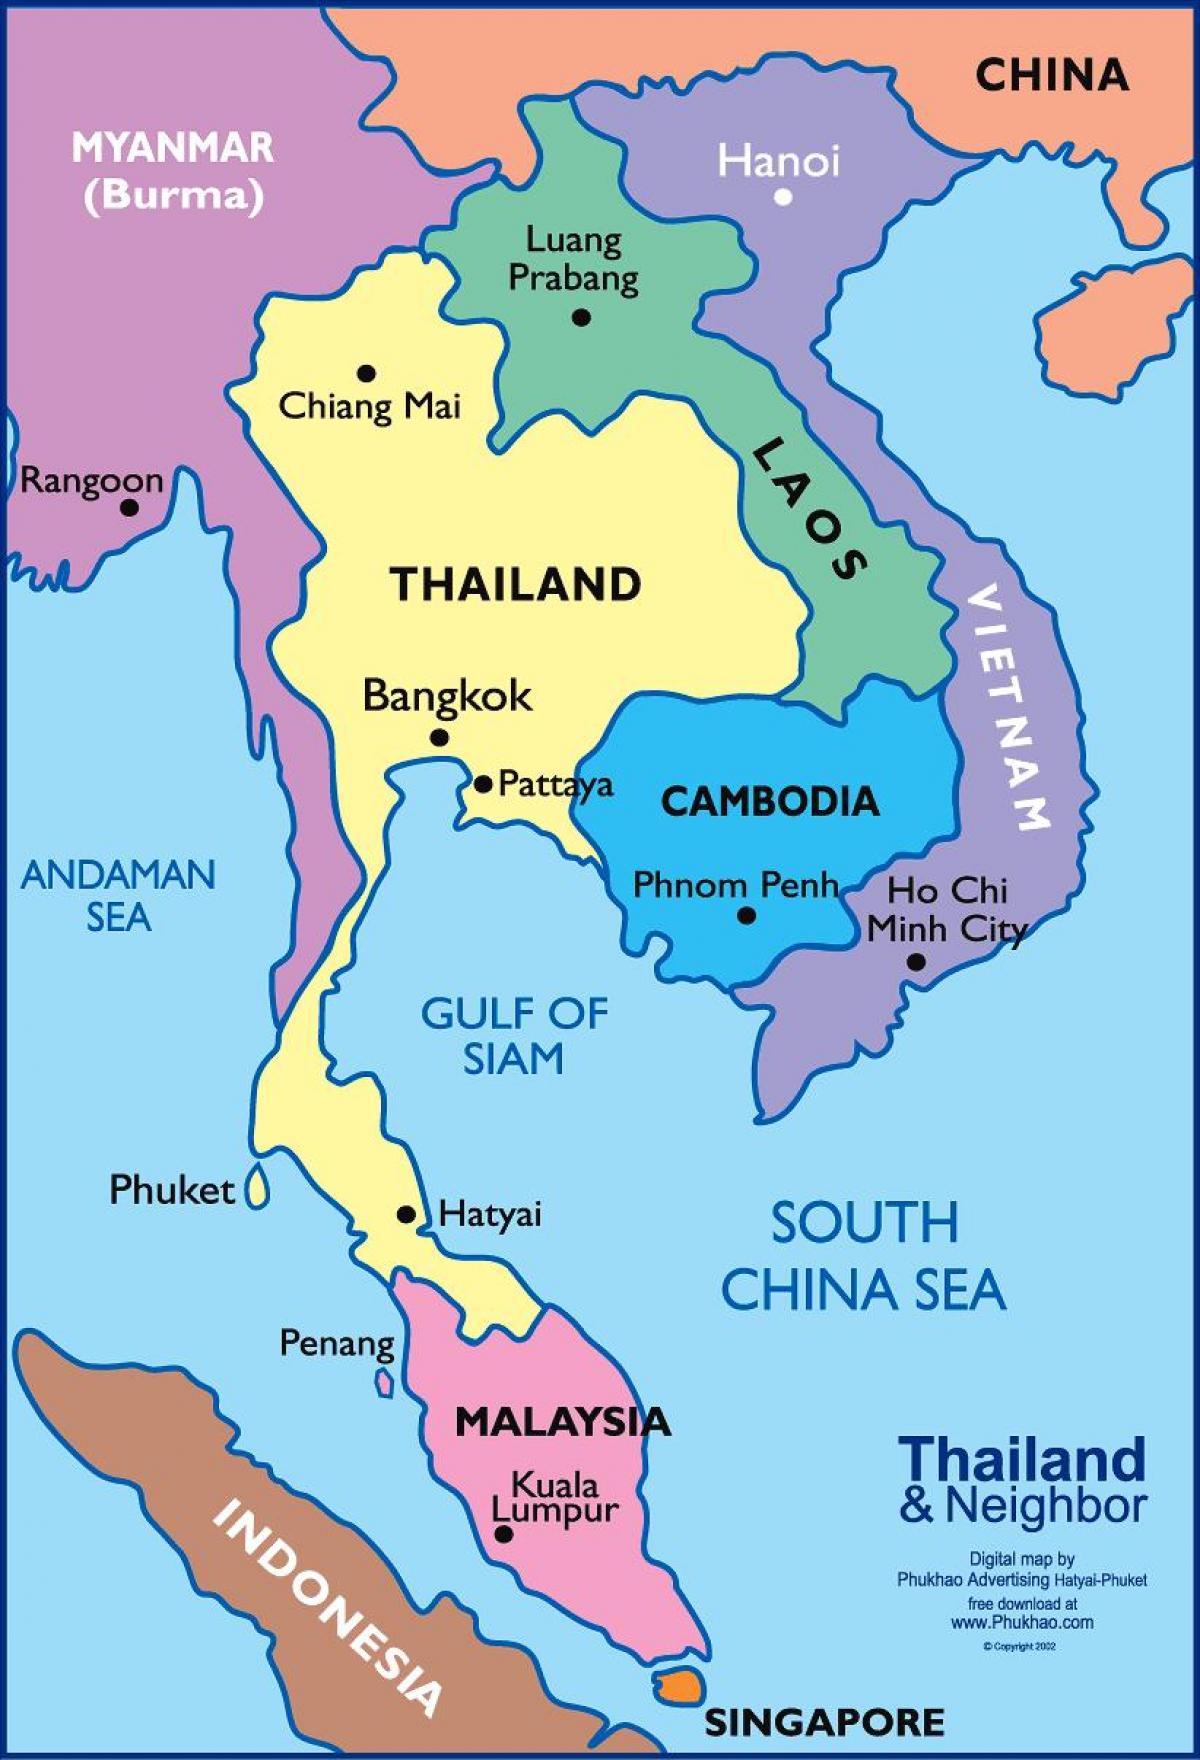 bangkoku thai mapu